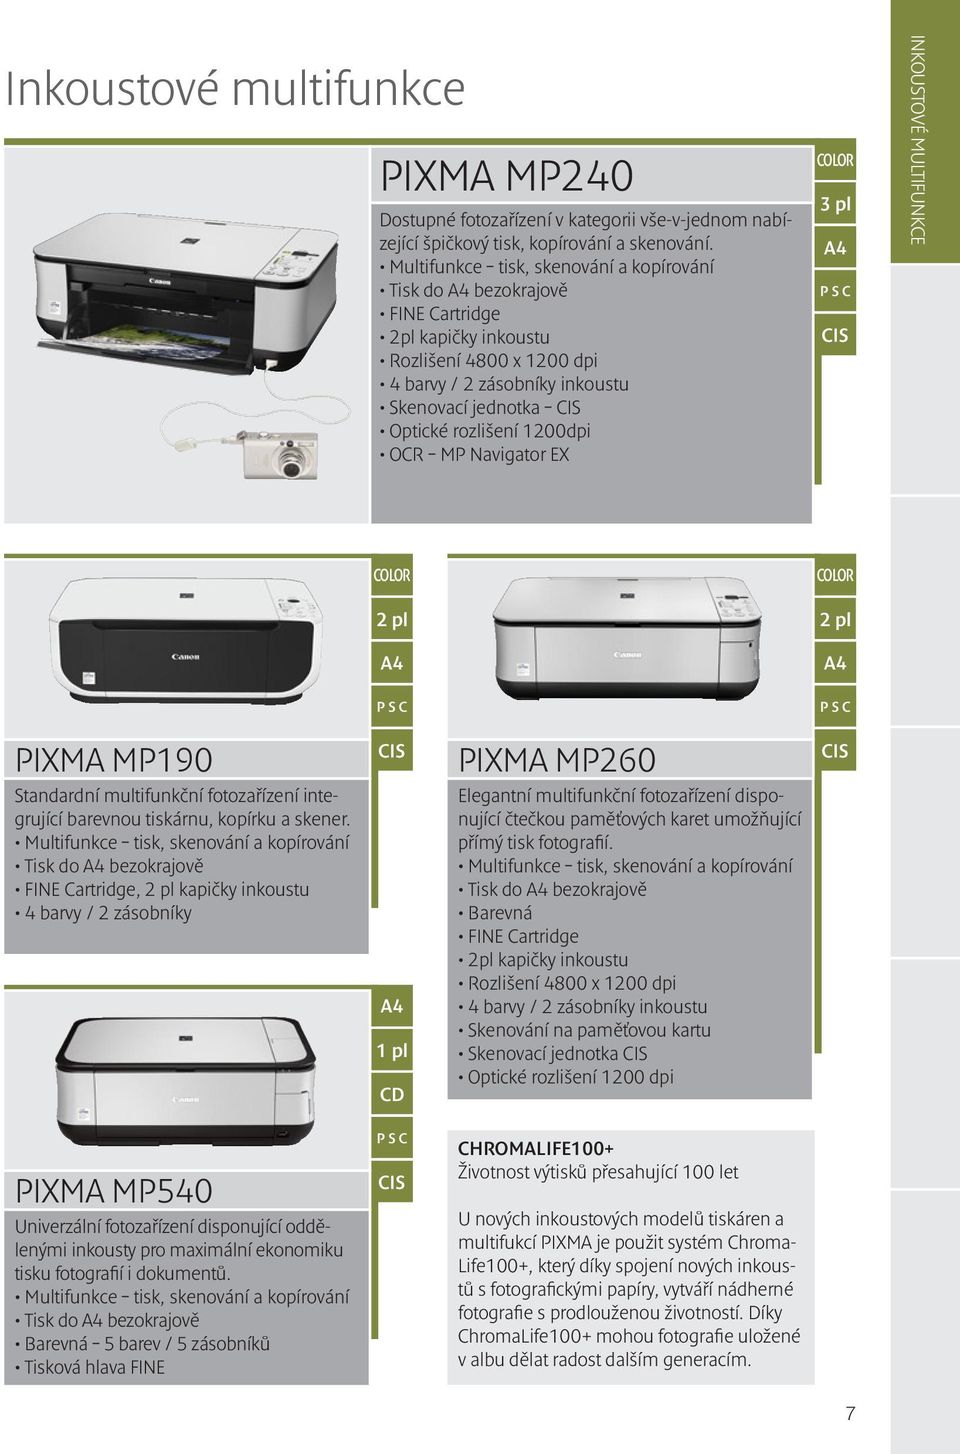 1200dpi OCR MP Navigator EX 3 pl CIS Inkoustové multifunkce 2 pl 2 pl PIXMA MP190 Standardní multifunkční fotozařízení integrující barevnou tiskárnu, kopírku a skener.